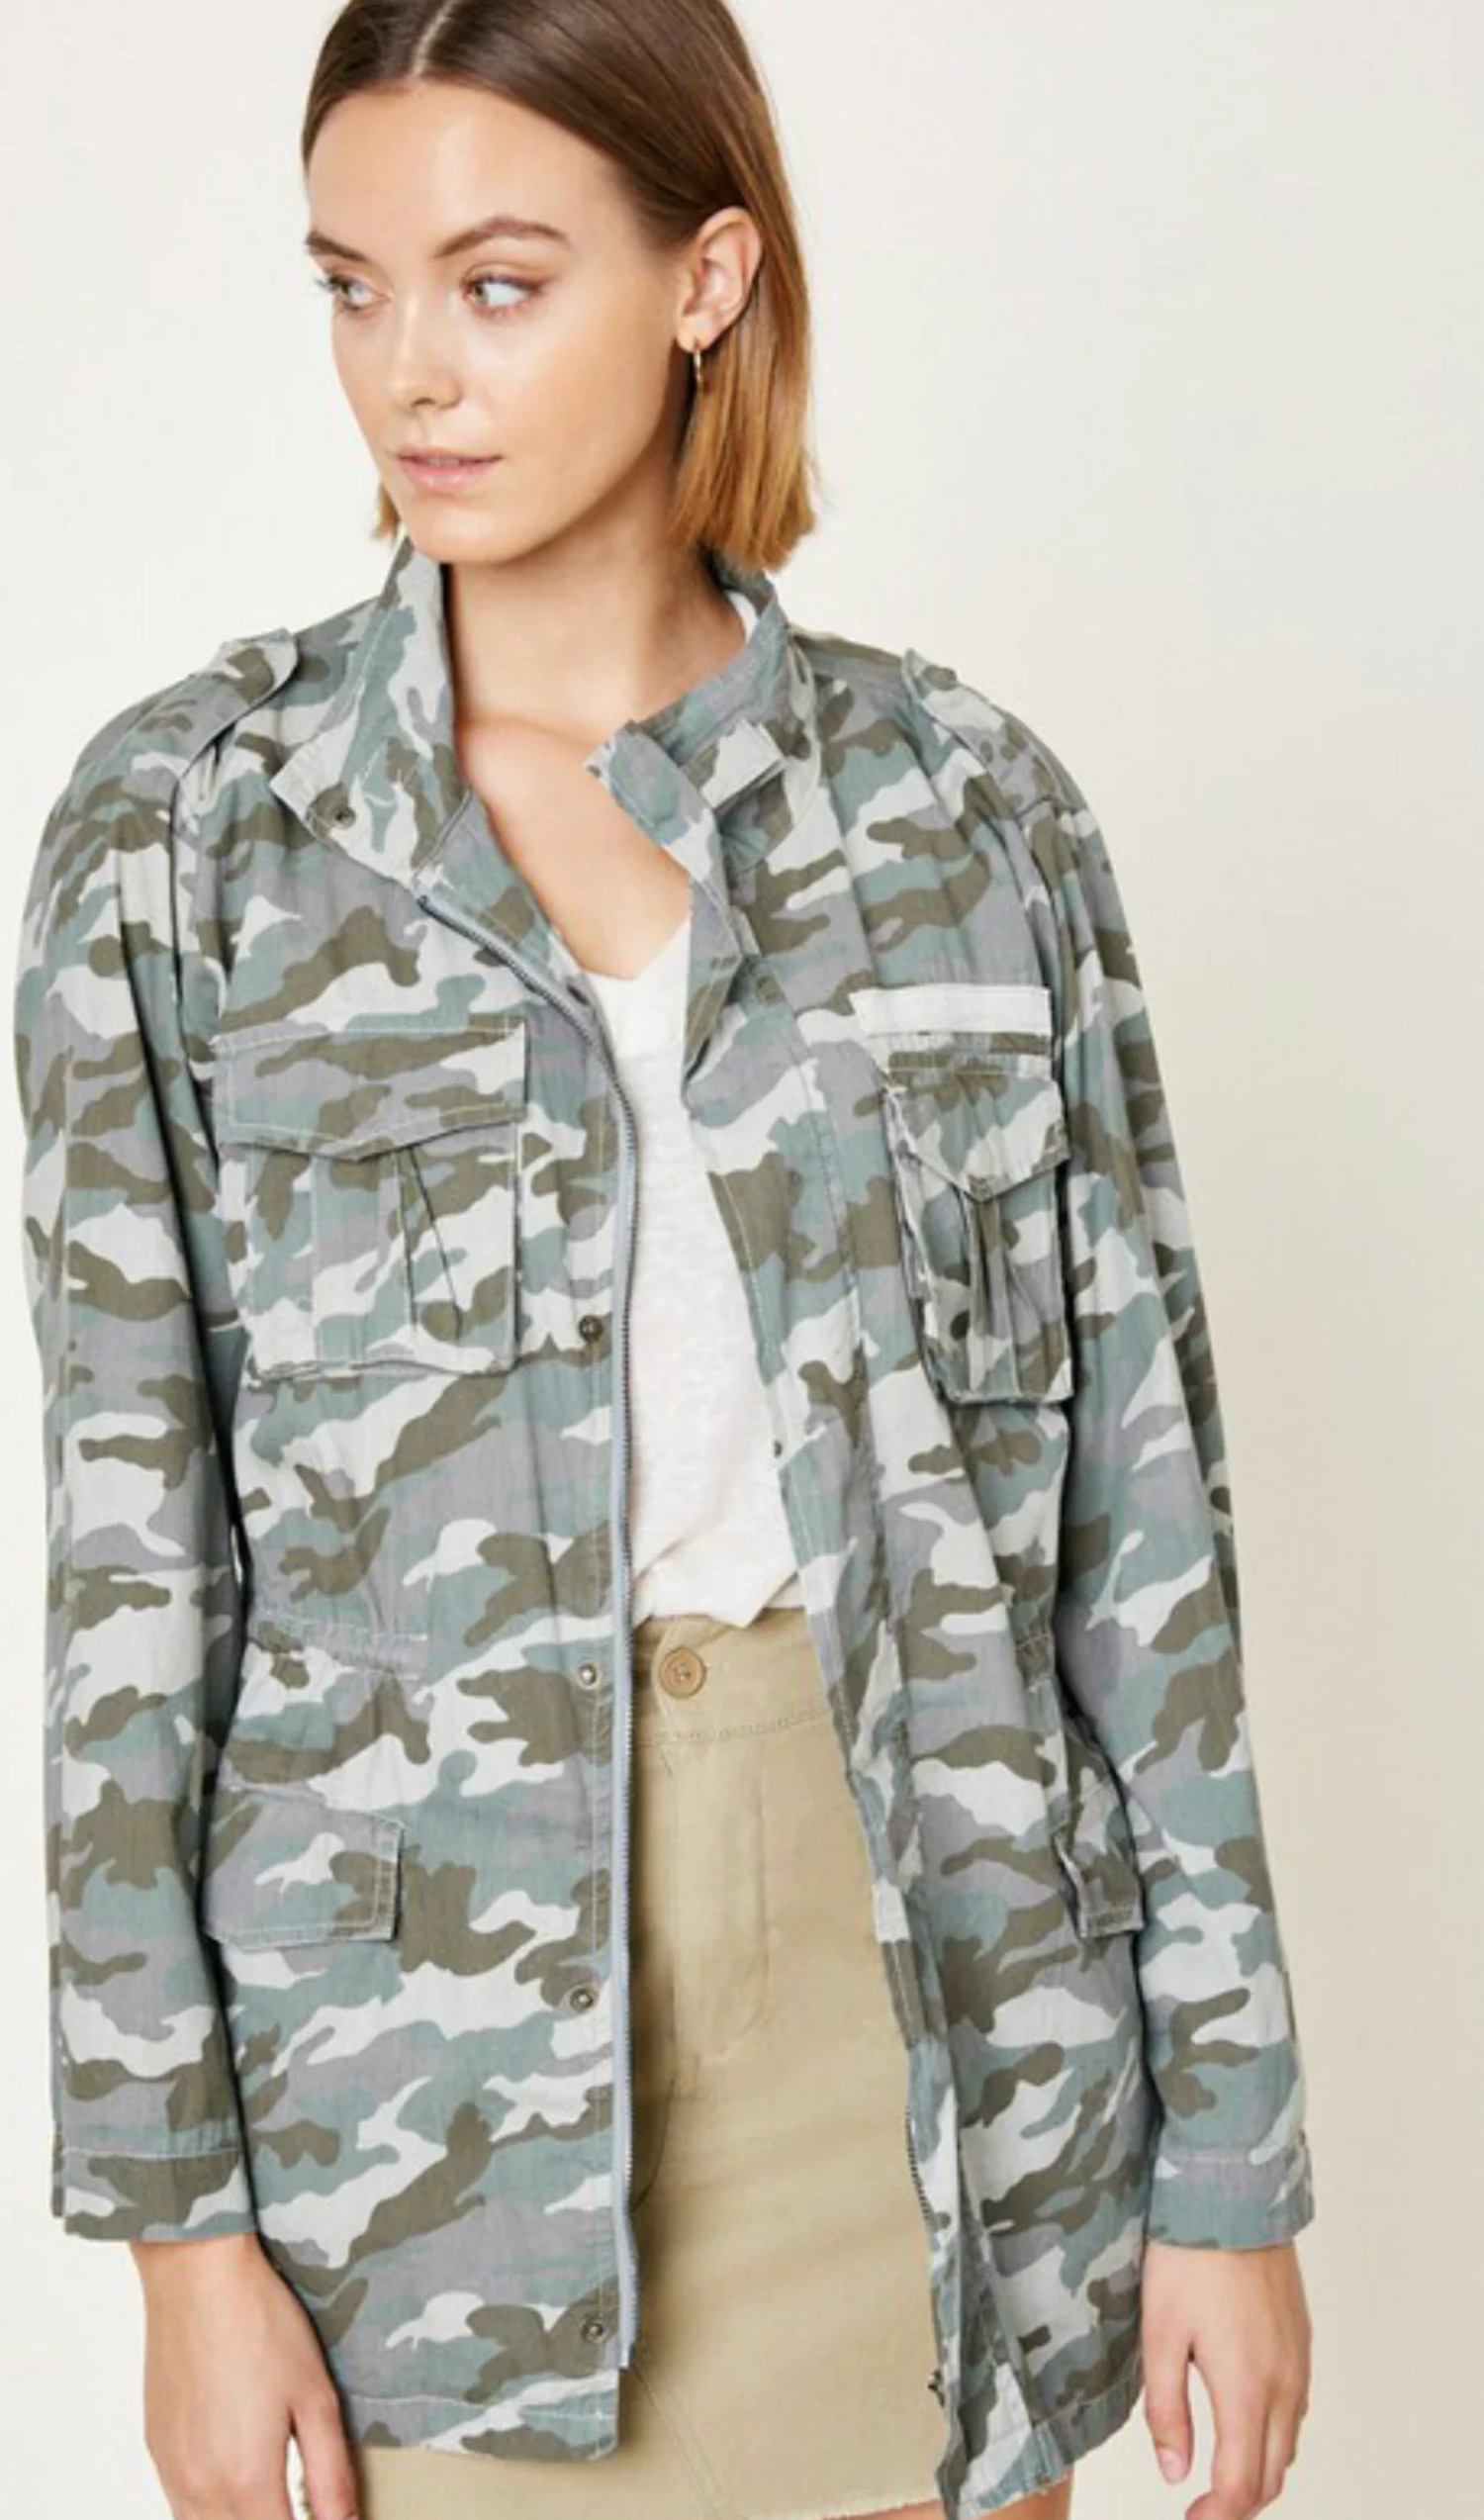 Women's Camouflage Jacket - image 1 of 5